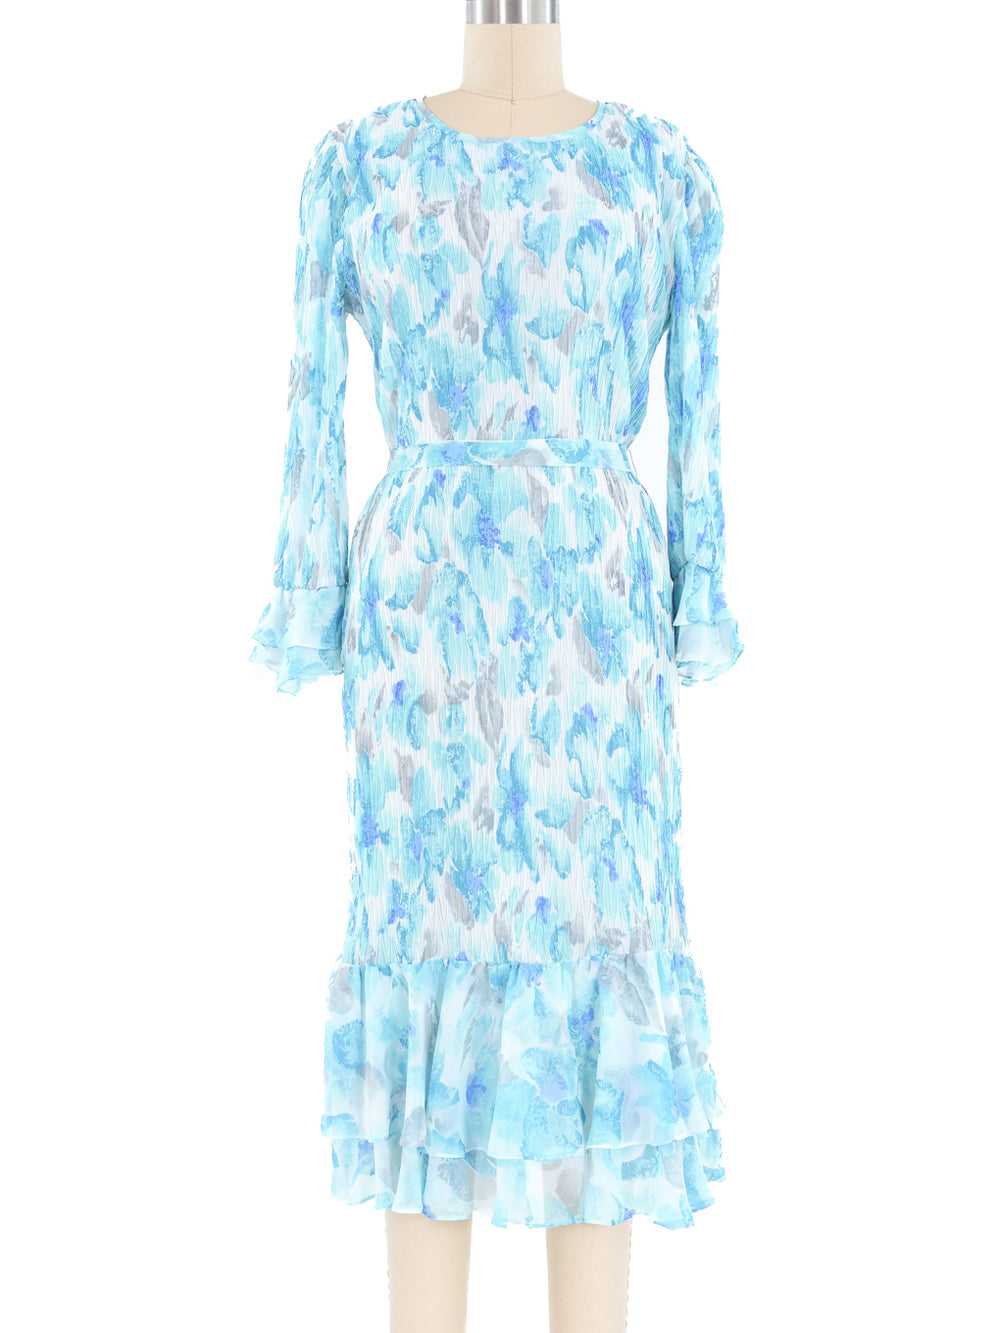 Turquoise Pleated Ruffle Dress - image 1